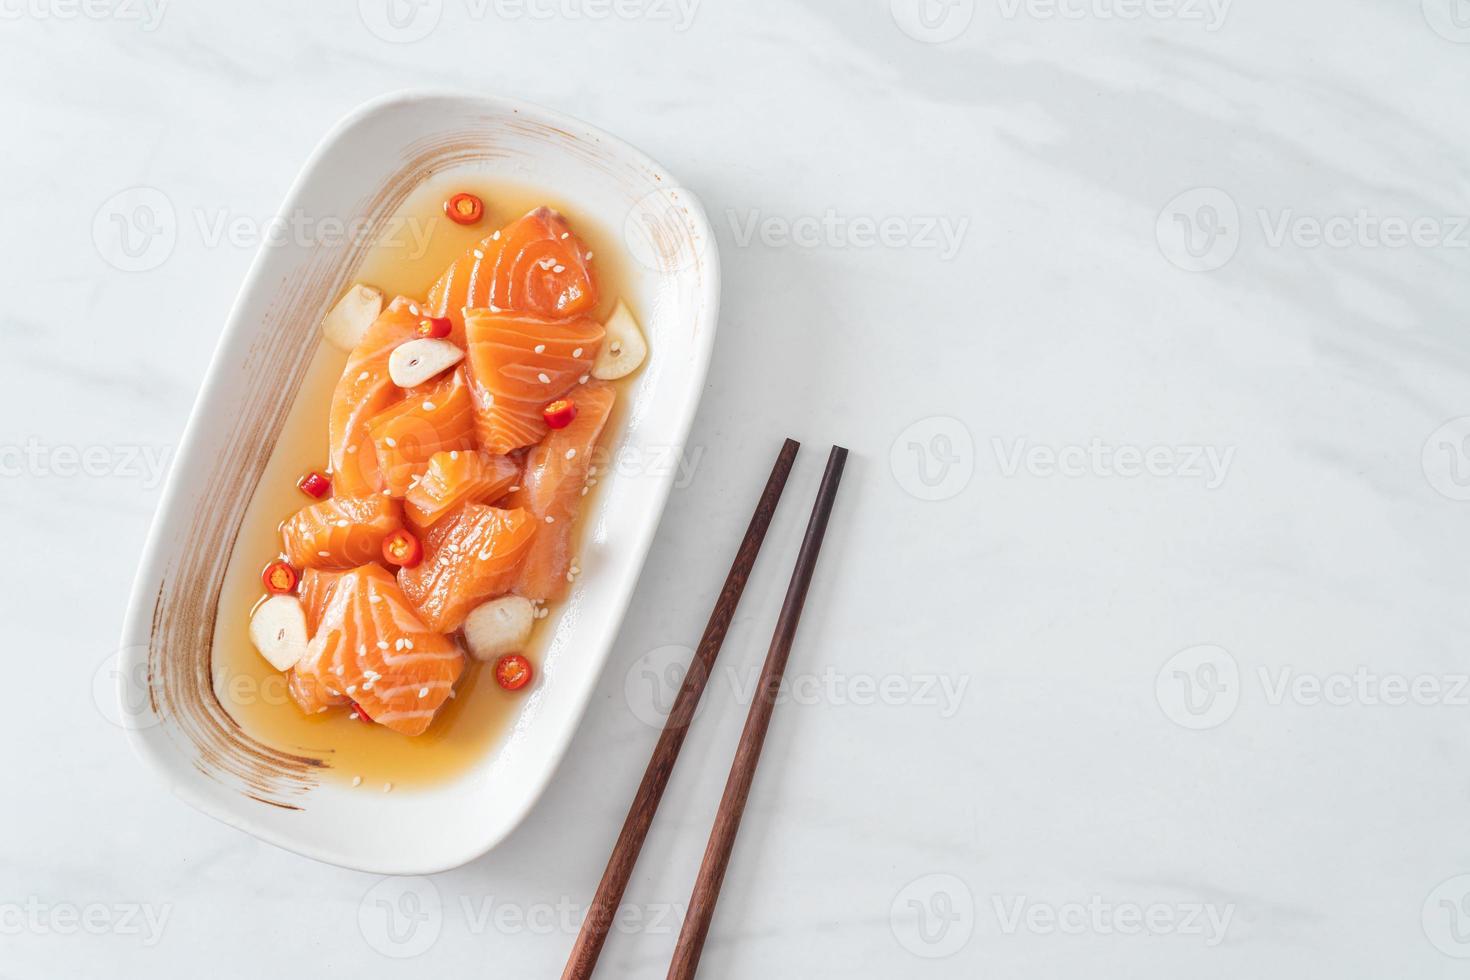 salmão fresco shoyu marinado cru ou molho de soja em conserva de salmão - estilo de comida asiática foto